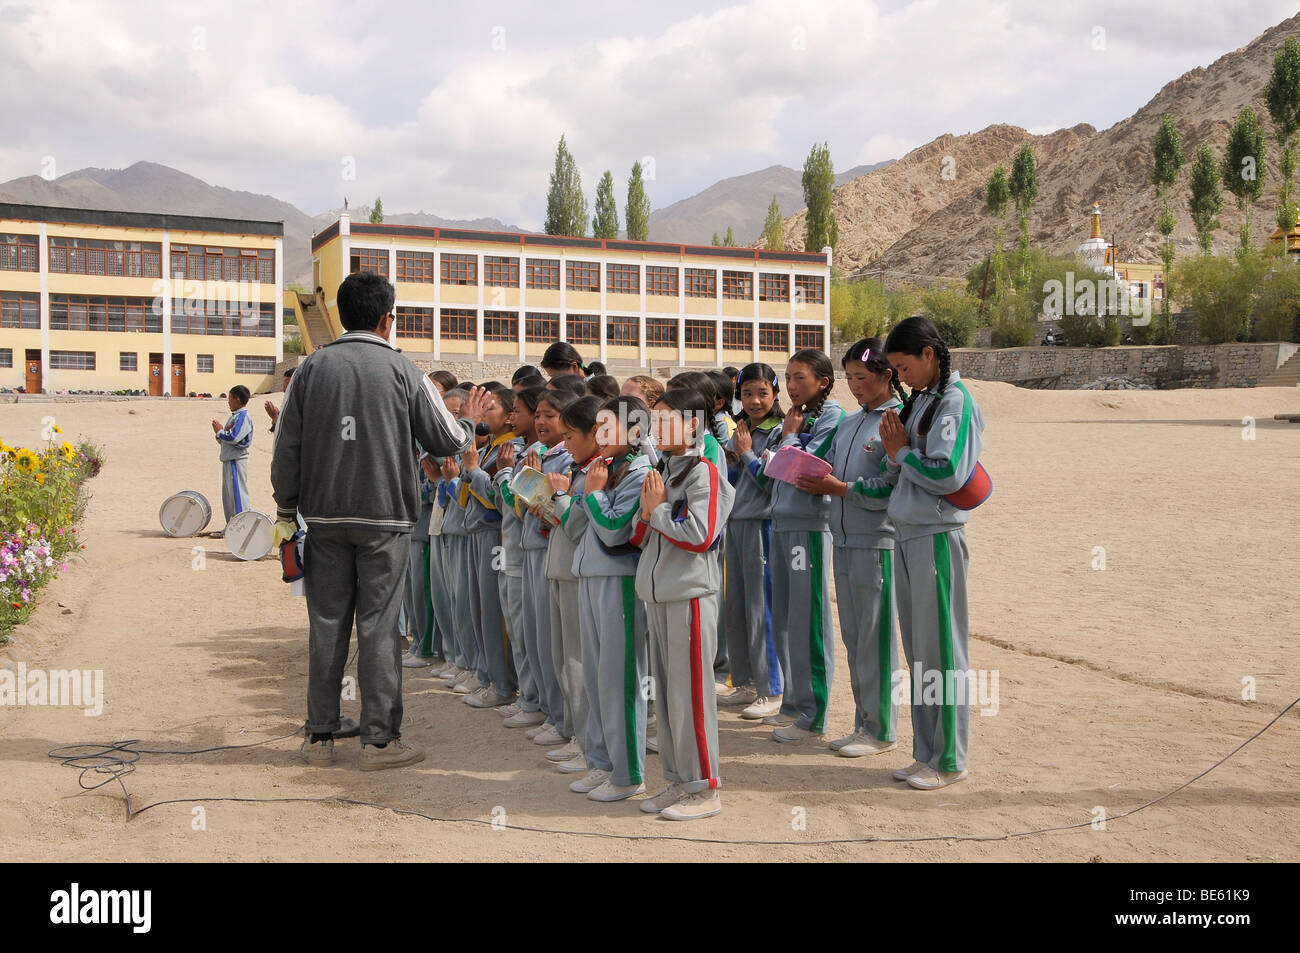 Morgen Bericht In Das Indische Schulsystem An Einer Schule In Lamdon Leh Jammu Und Kaschmir Indien Himalaya Asien Stockfotografie Alamy